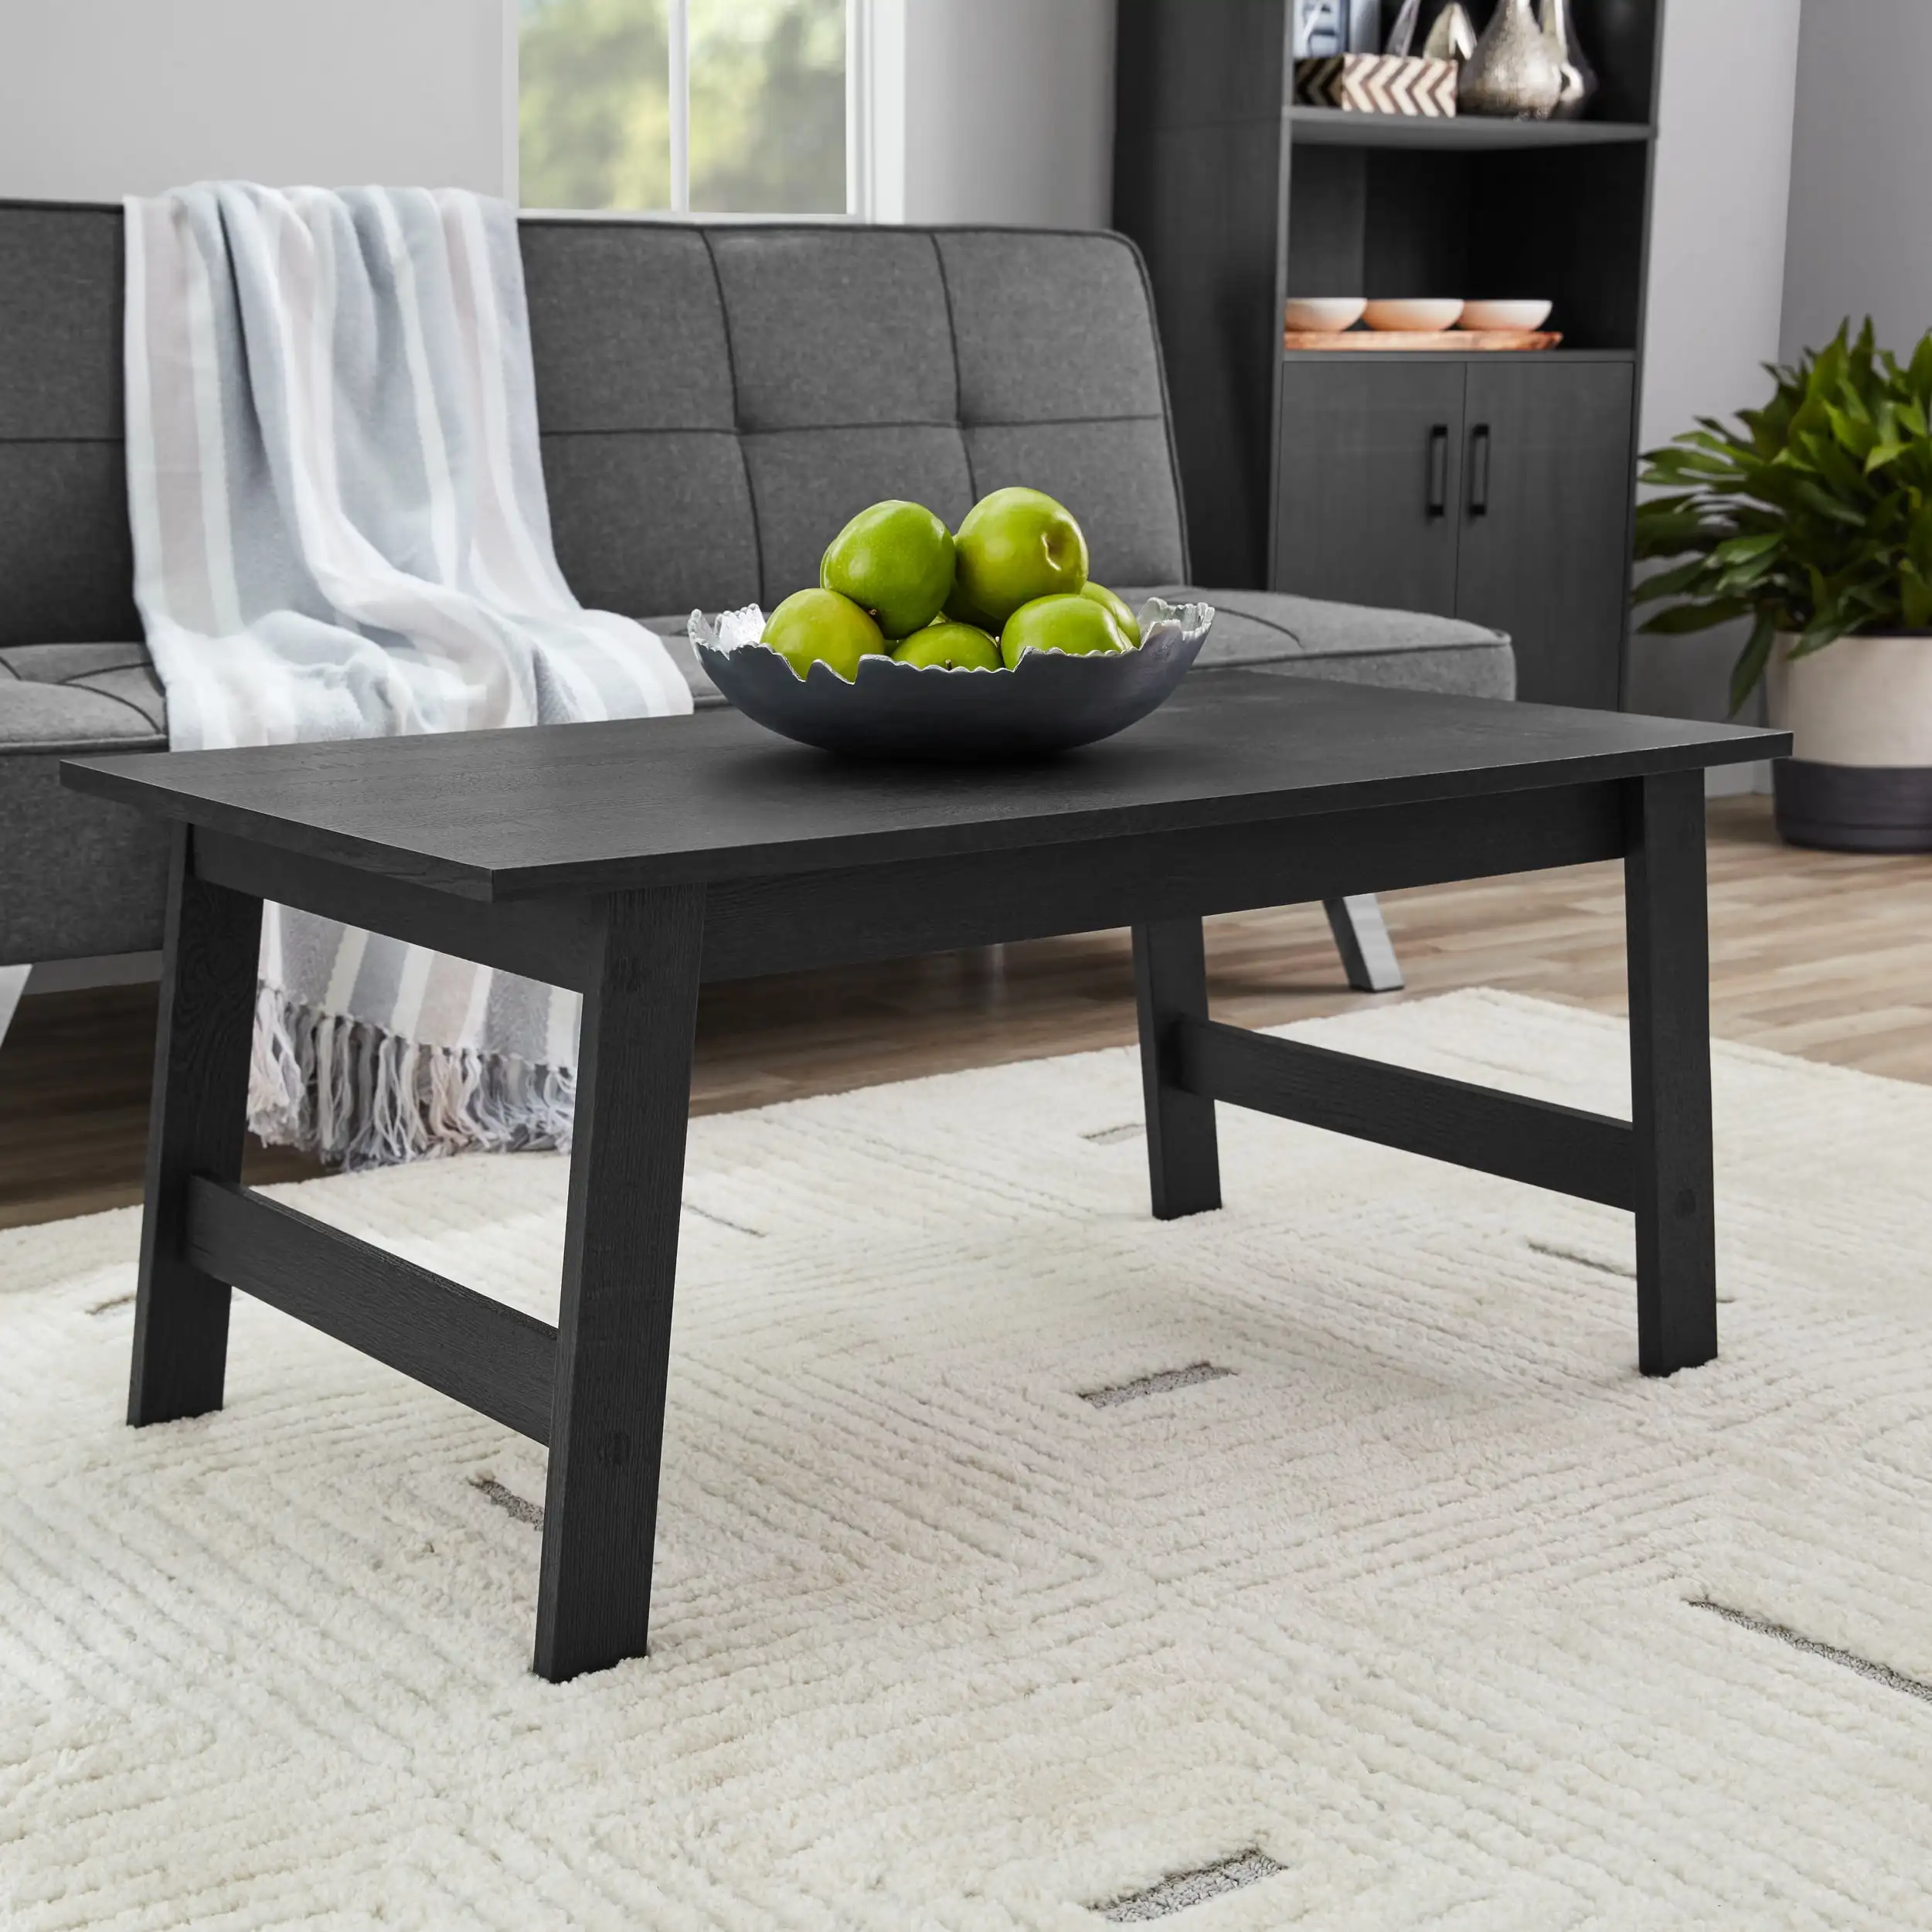 

Деревянный прямоугольный журнальный столик, черная отделка, искусственный кофейный столик, мебель для гостиной